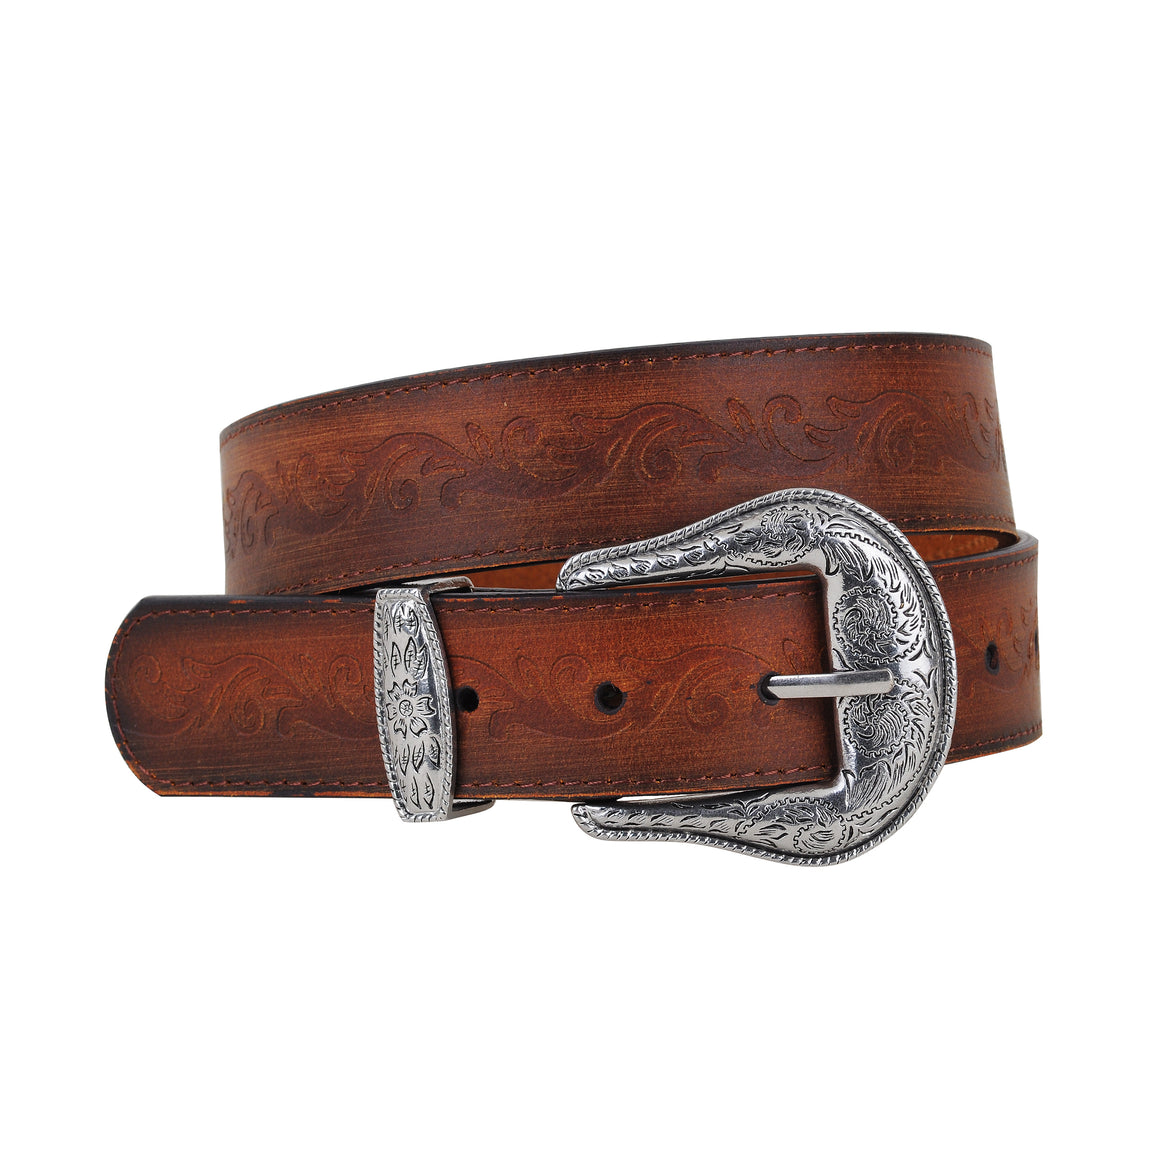 5016 - Western Vintage Floral Tooled Leather Belt